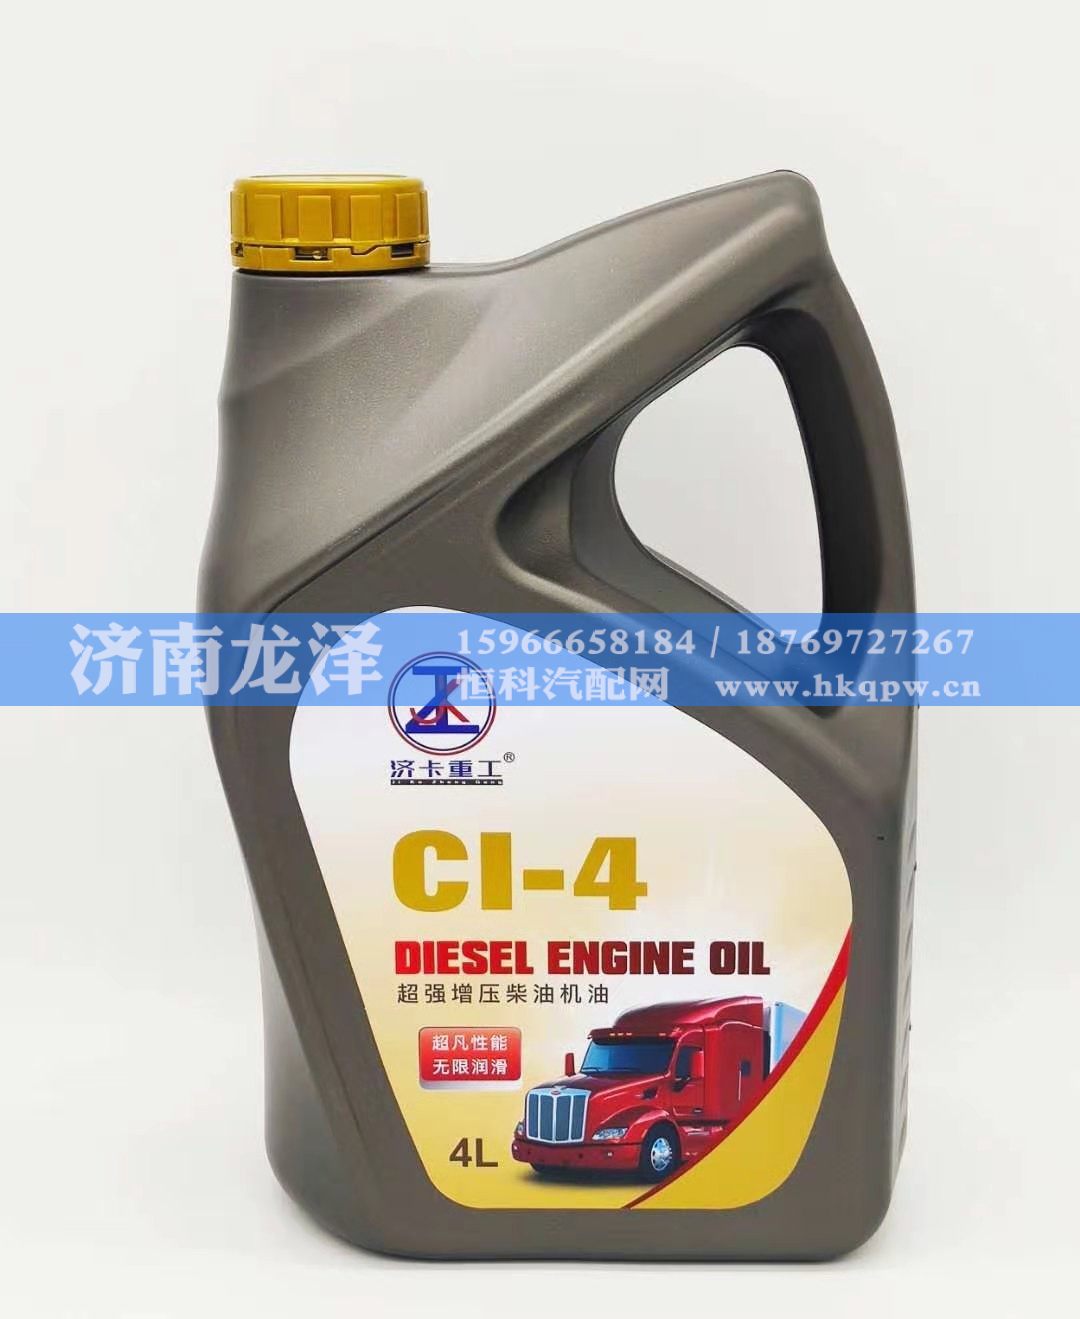 CI-4,超强增压柴油机油,山东弗壳润滑科技有限公司